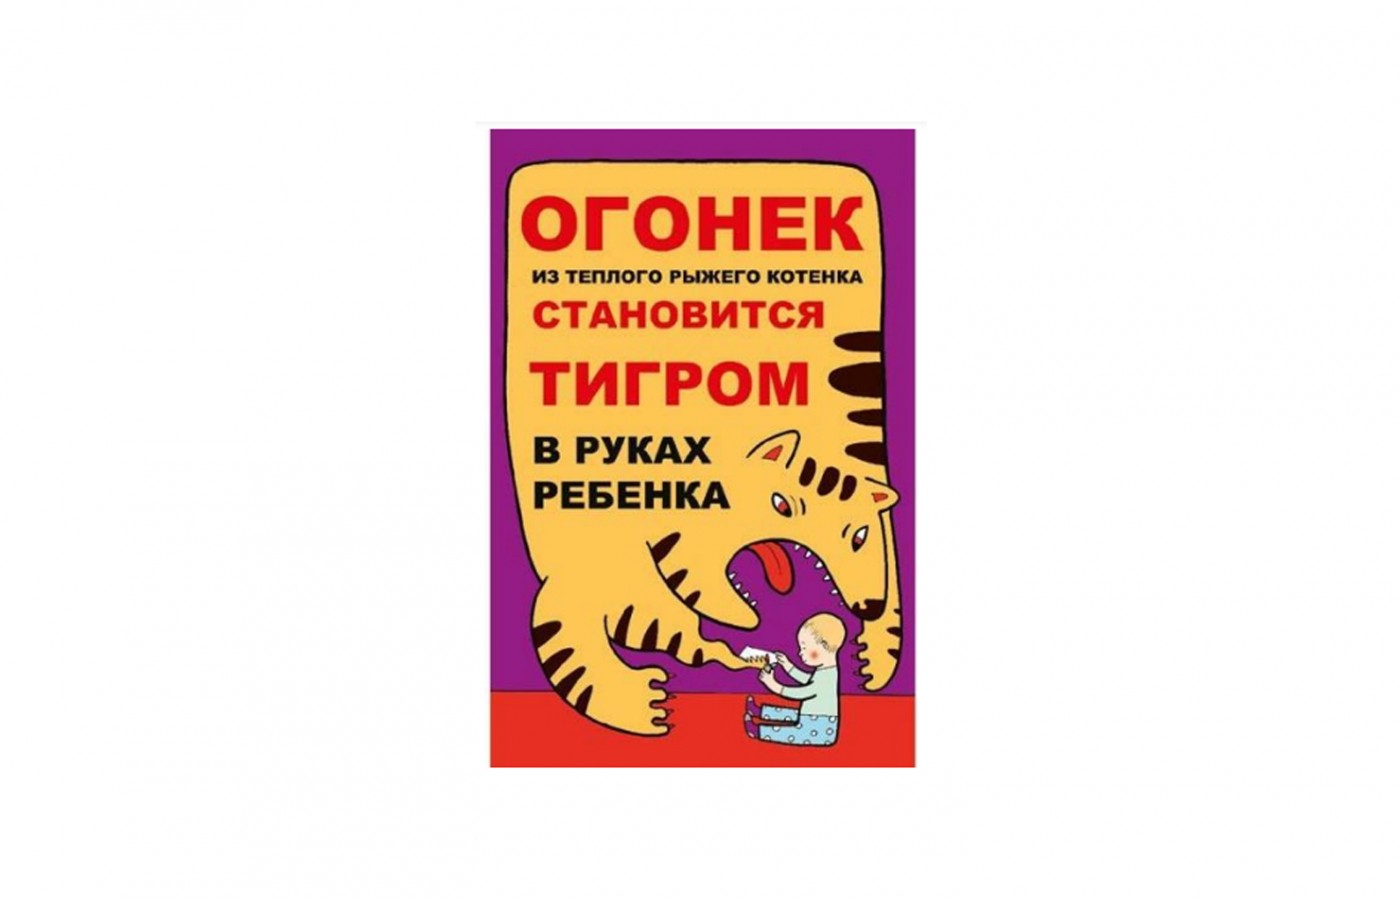 Плакат "Огонек из теплого рыжего котенка становится тигром в руках ребенка"